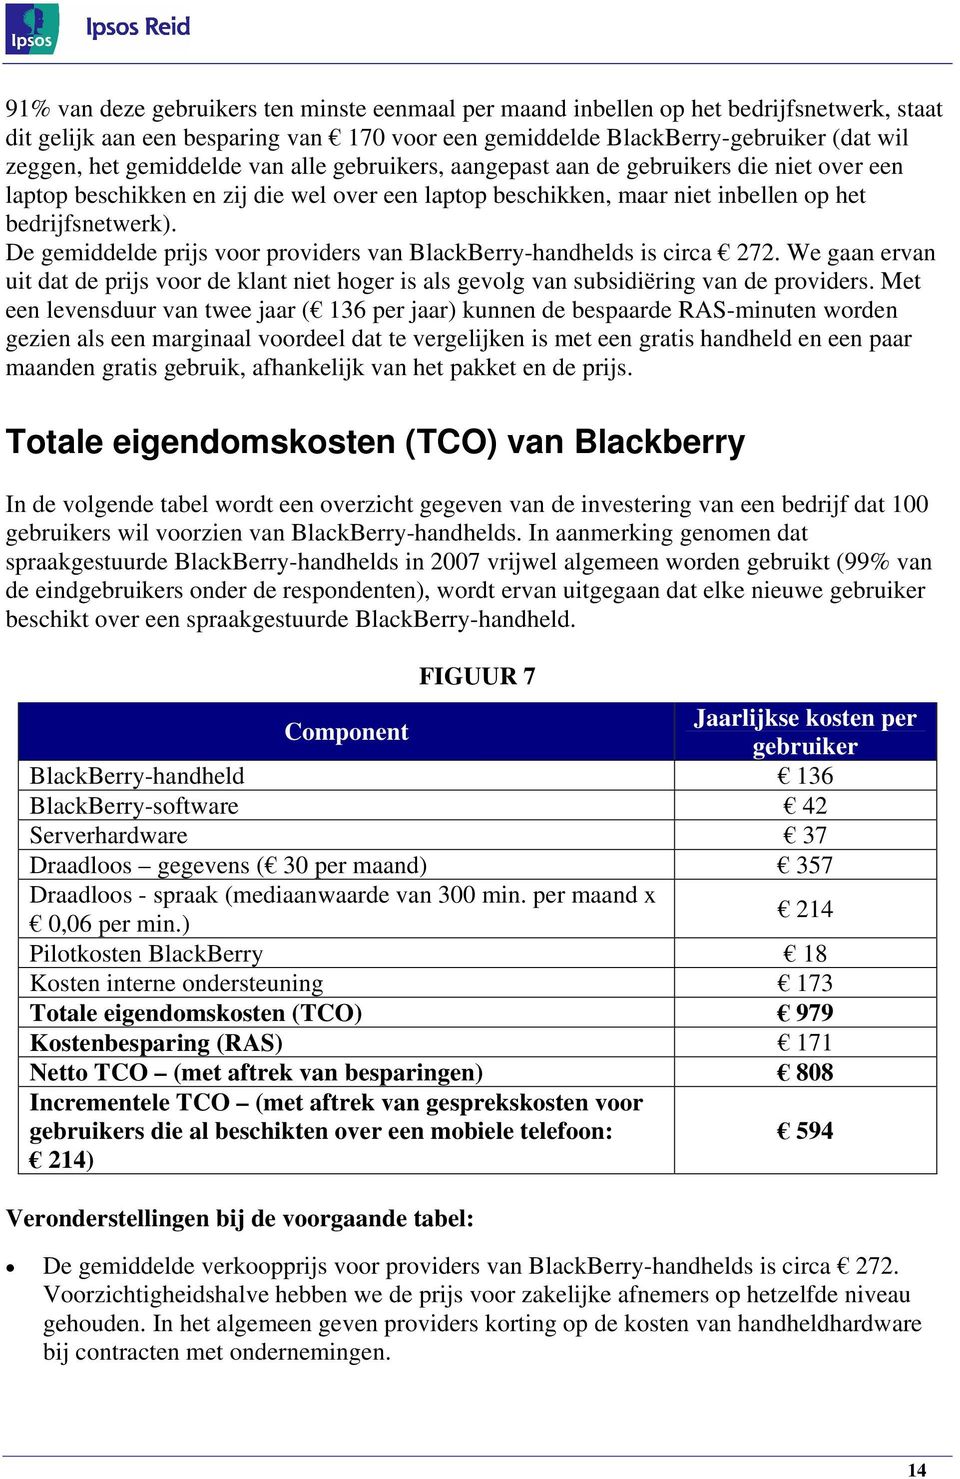 De gemiddelde prijs voor providers van BlackBerry-handhelds is circa 272. We gaan ervan uit dat de prijs voor de klant niet hoger is als gevolg van subsidiëring van de providers.